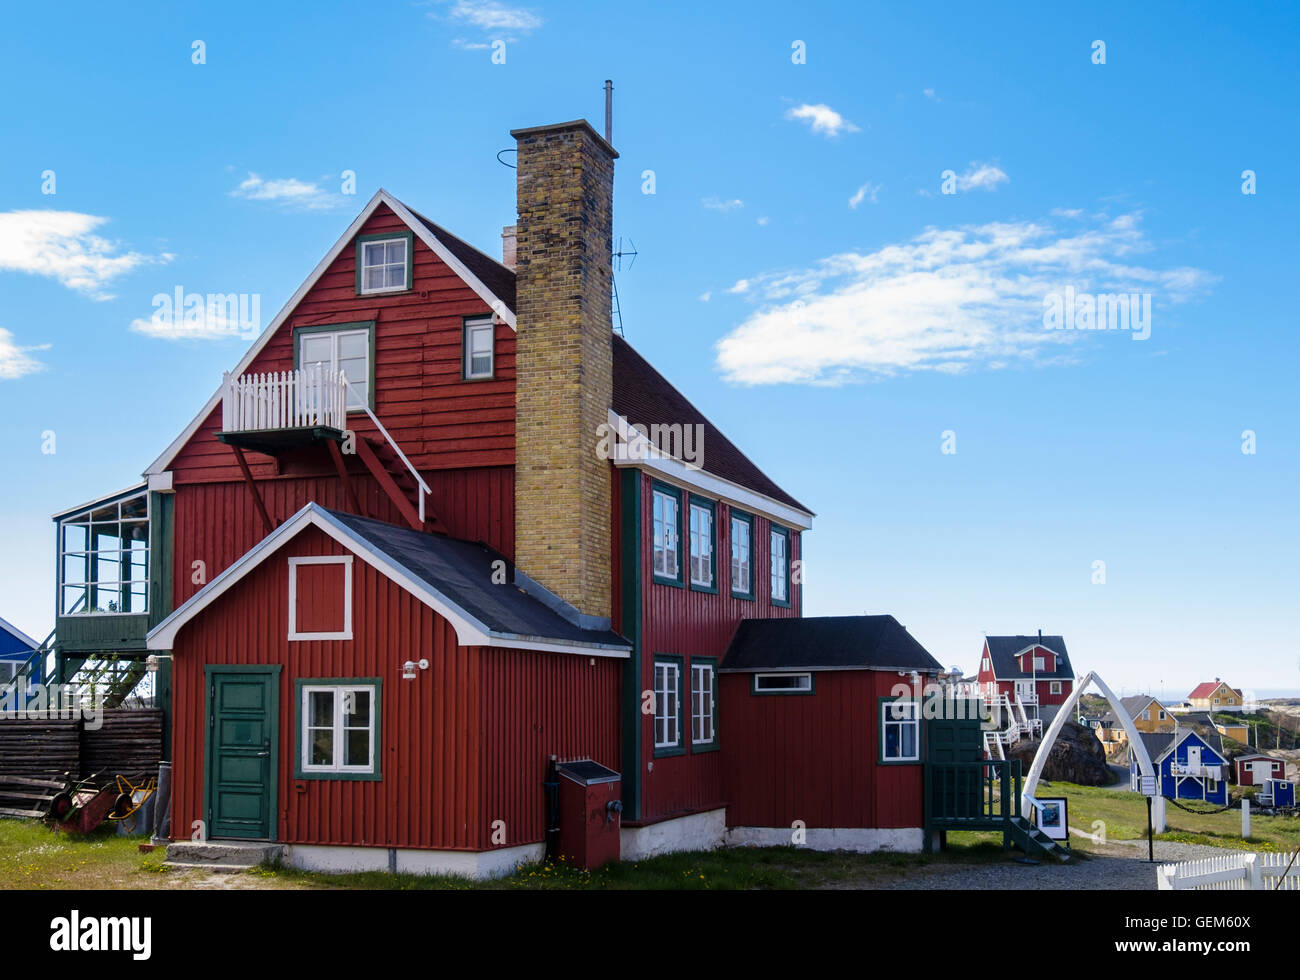 En bois rouge 19e siècle la maison coloniale Manager 1846 avec mâchoire de baleine arch dans le musée. Sisimiut Qeqqata ouest du Groenland Banque D'Images